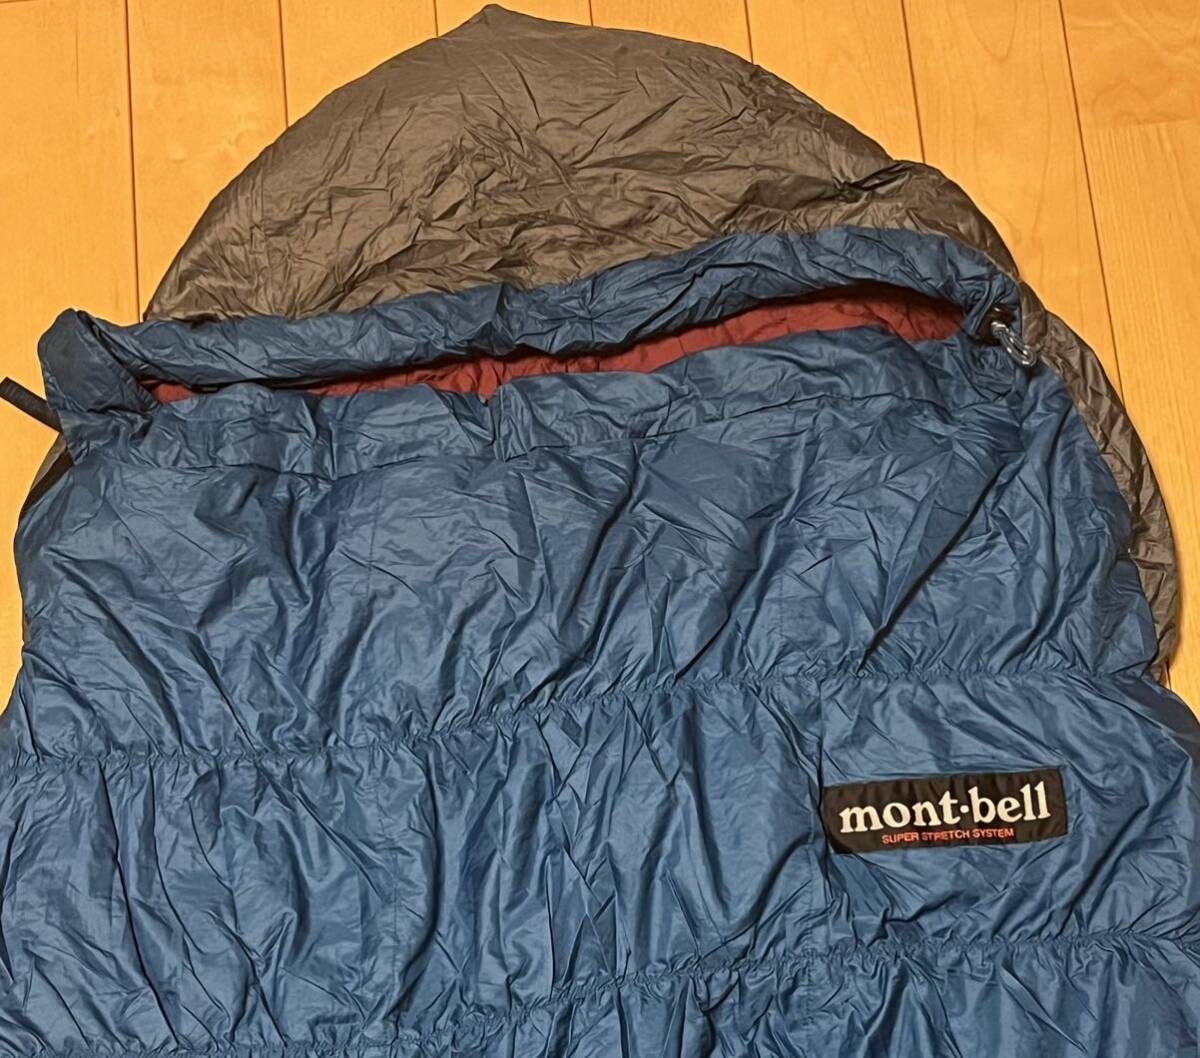 モンベル(mont-bell) スーパーストレッチダウンハガー シュラフ #4 寝袋 _画像3